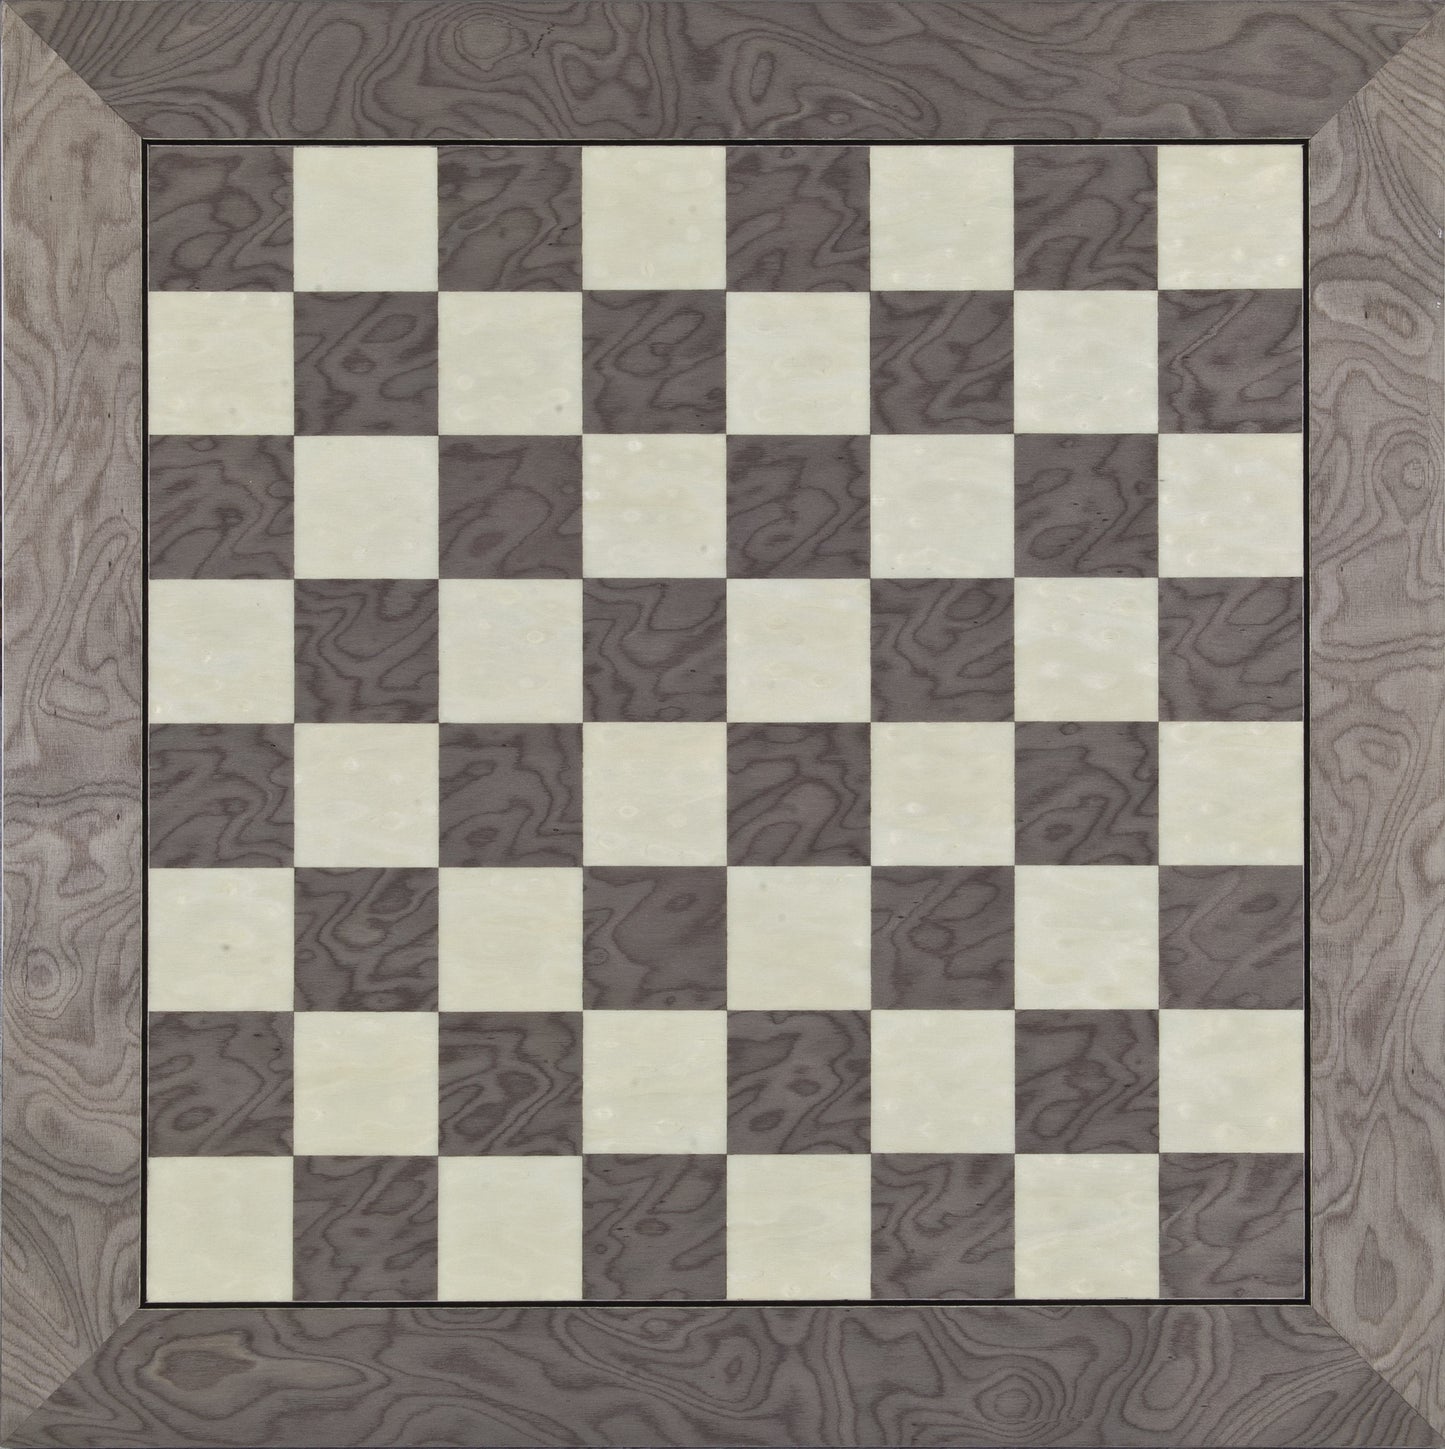 20 inch Superior Chess Board